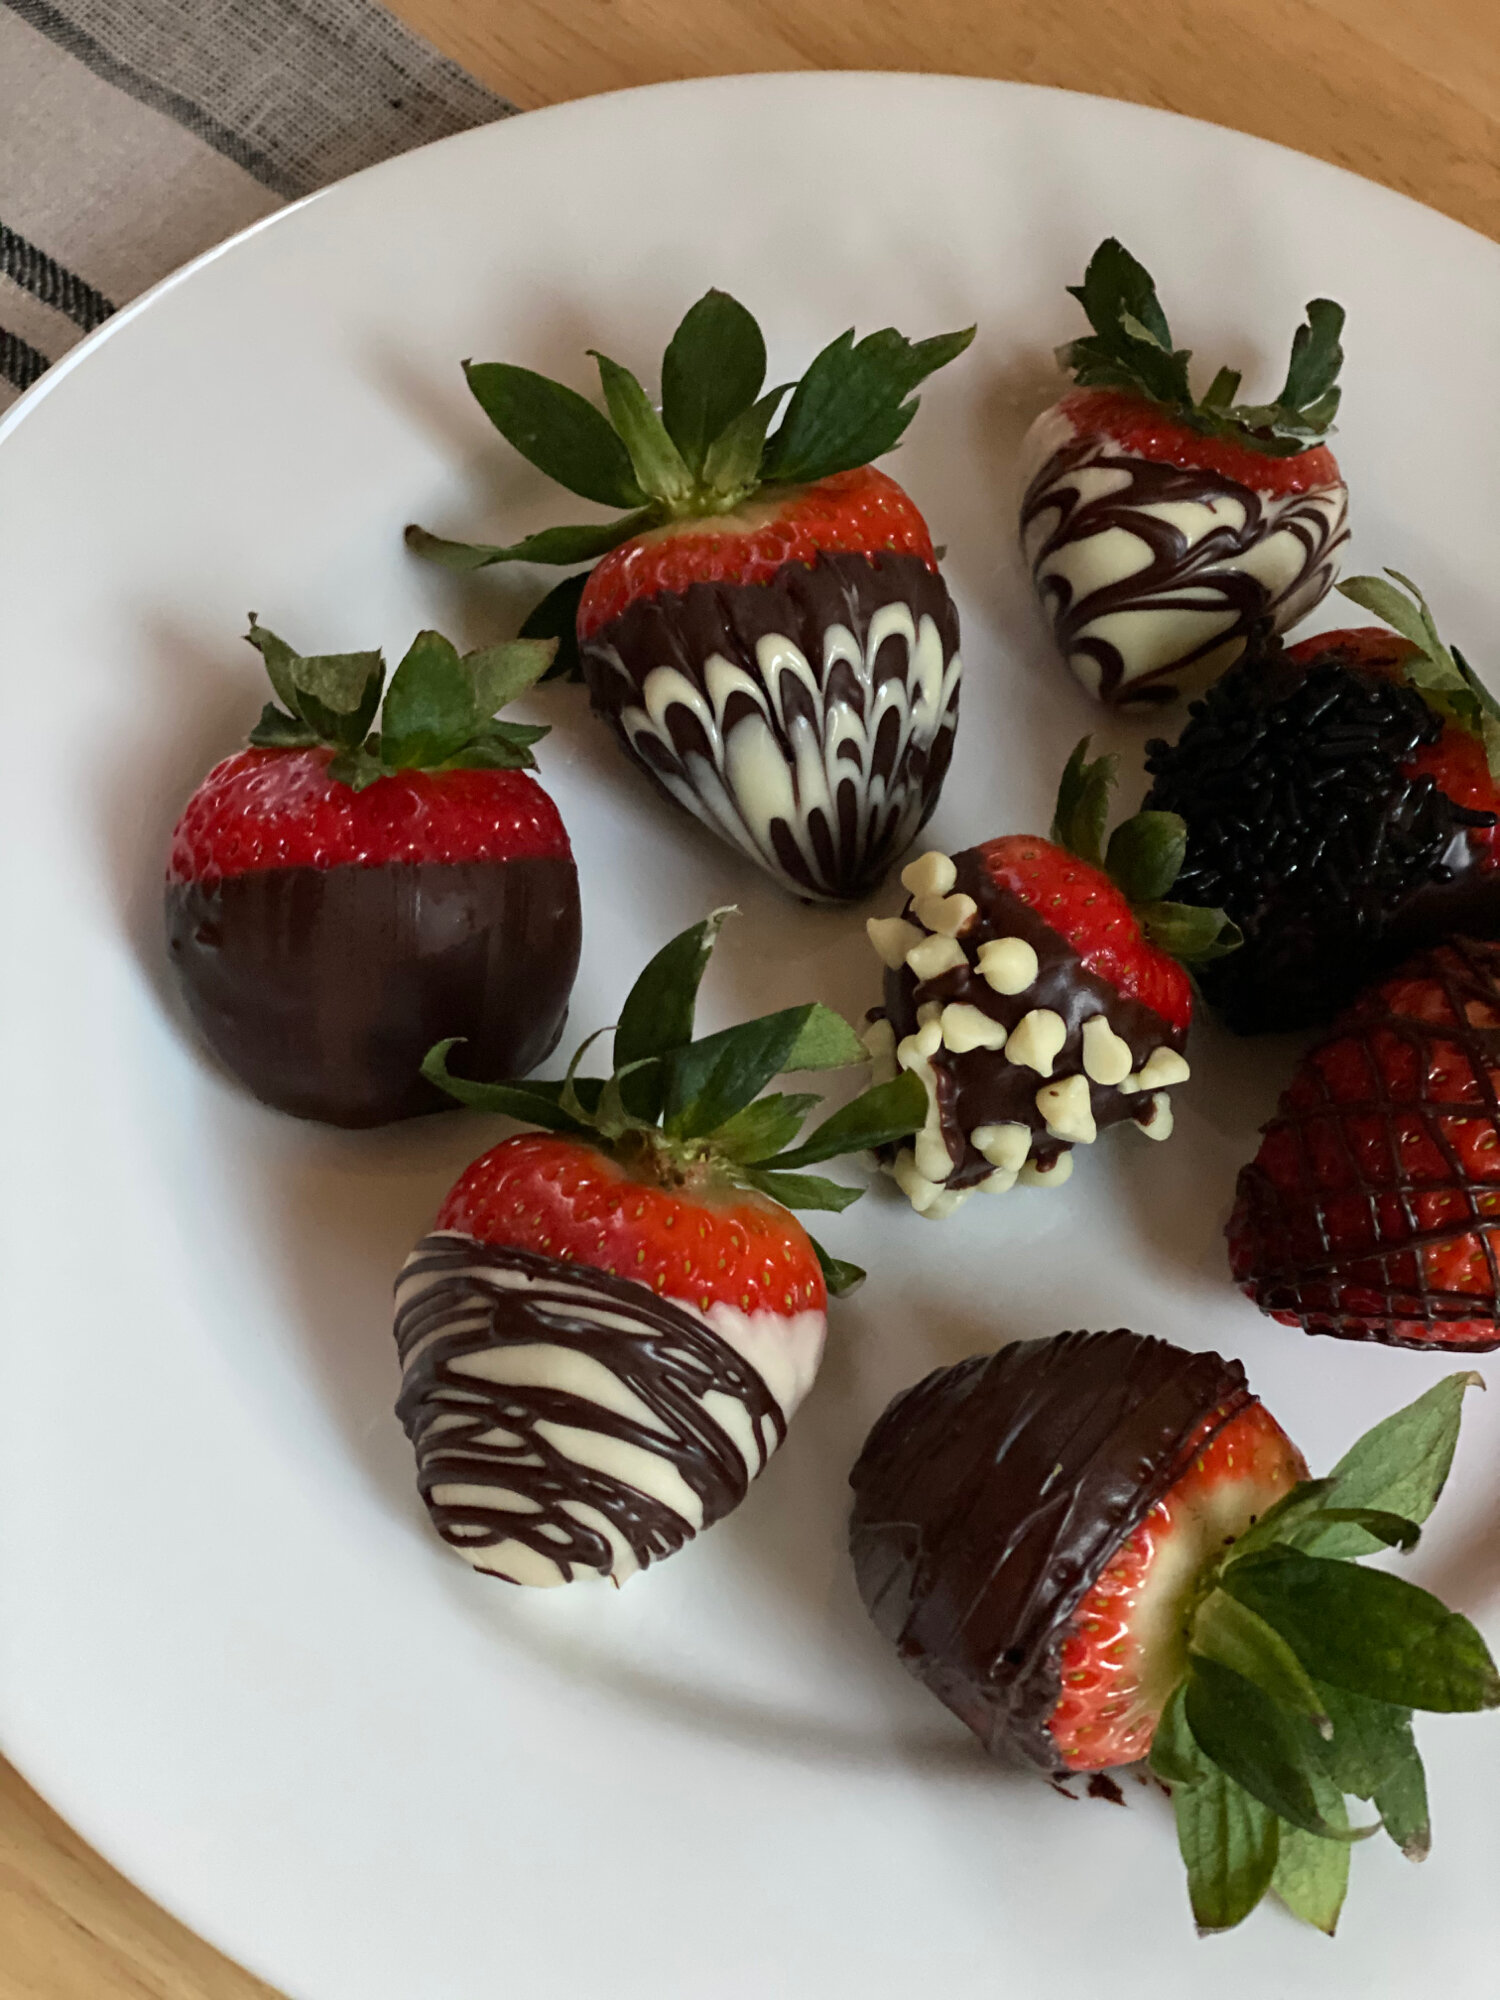 How to Make Dark Chocolate Covered Strawberries